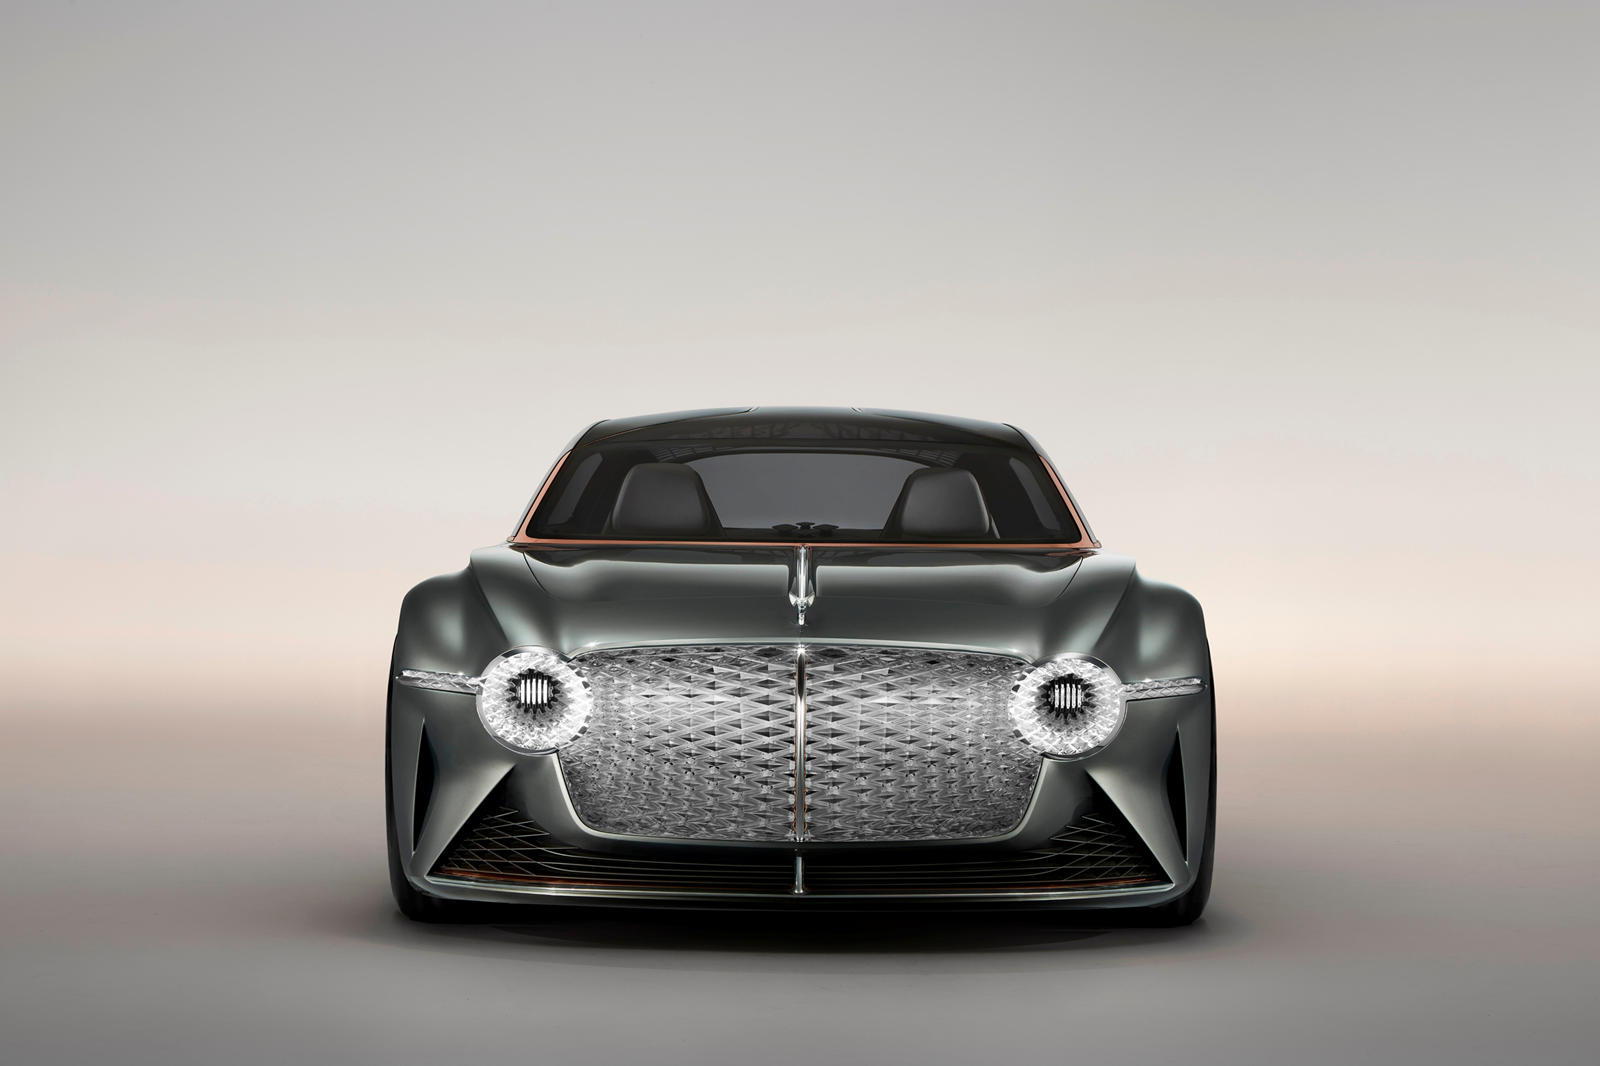 В дополнение к своим превосходным двигателям V8 и W12, Bentley предлагает электрифицированный 3,0-литровый двигатель V6, которым оснащен Bentayga Hybrid. Однако в нынешнем модельном ряду люксового бренда нет ни одного полностью электрического автомоб